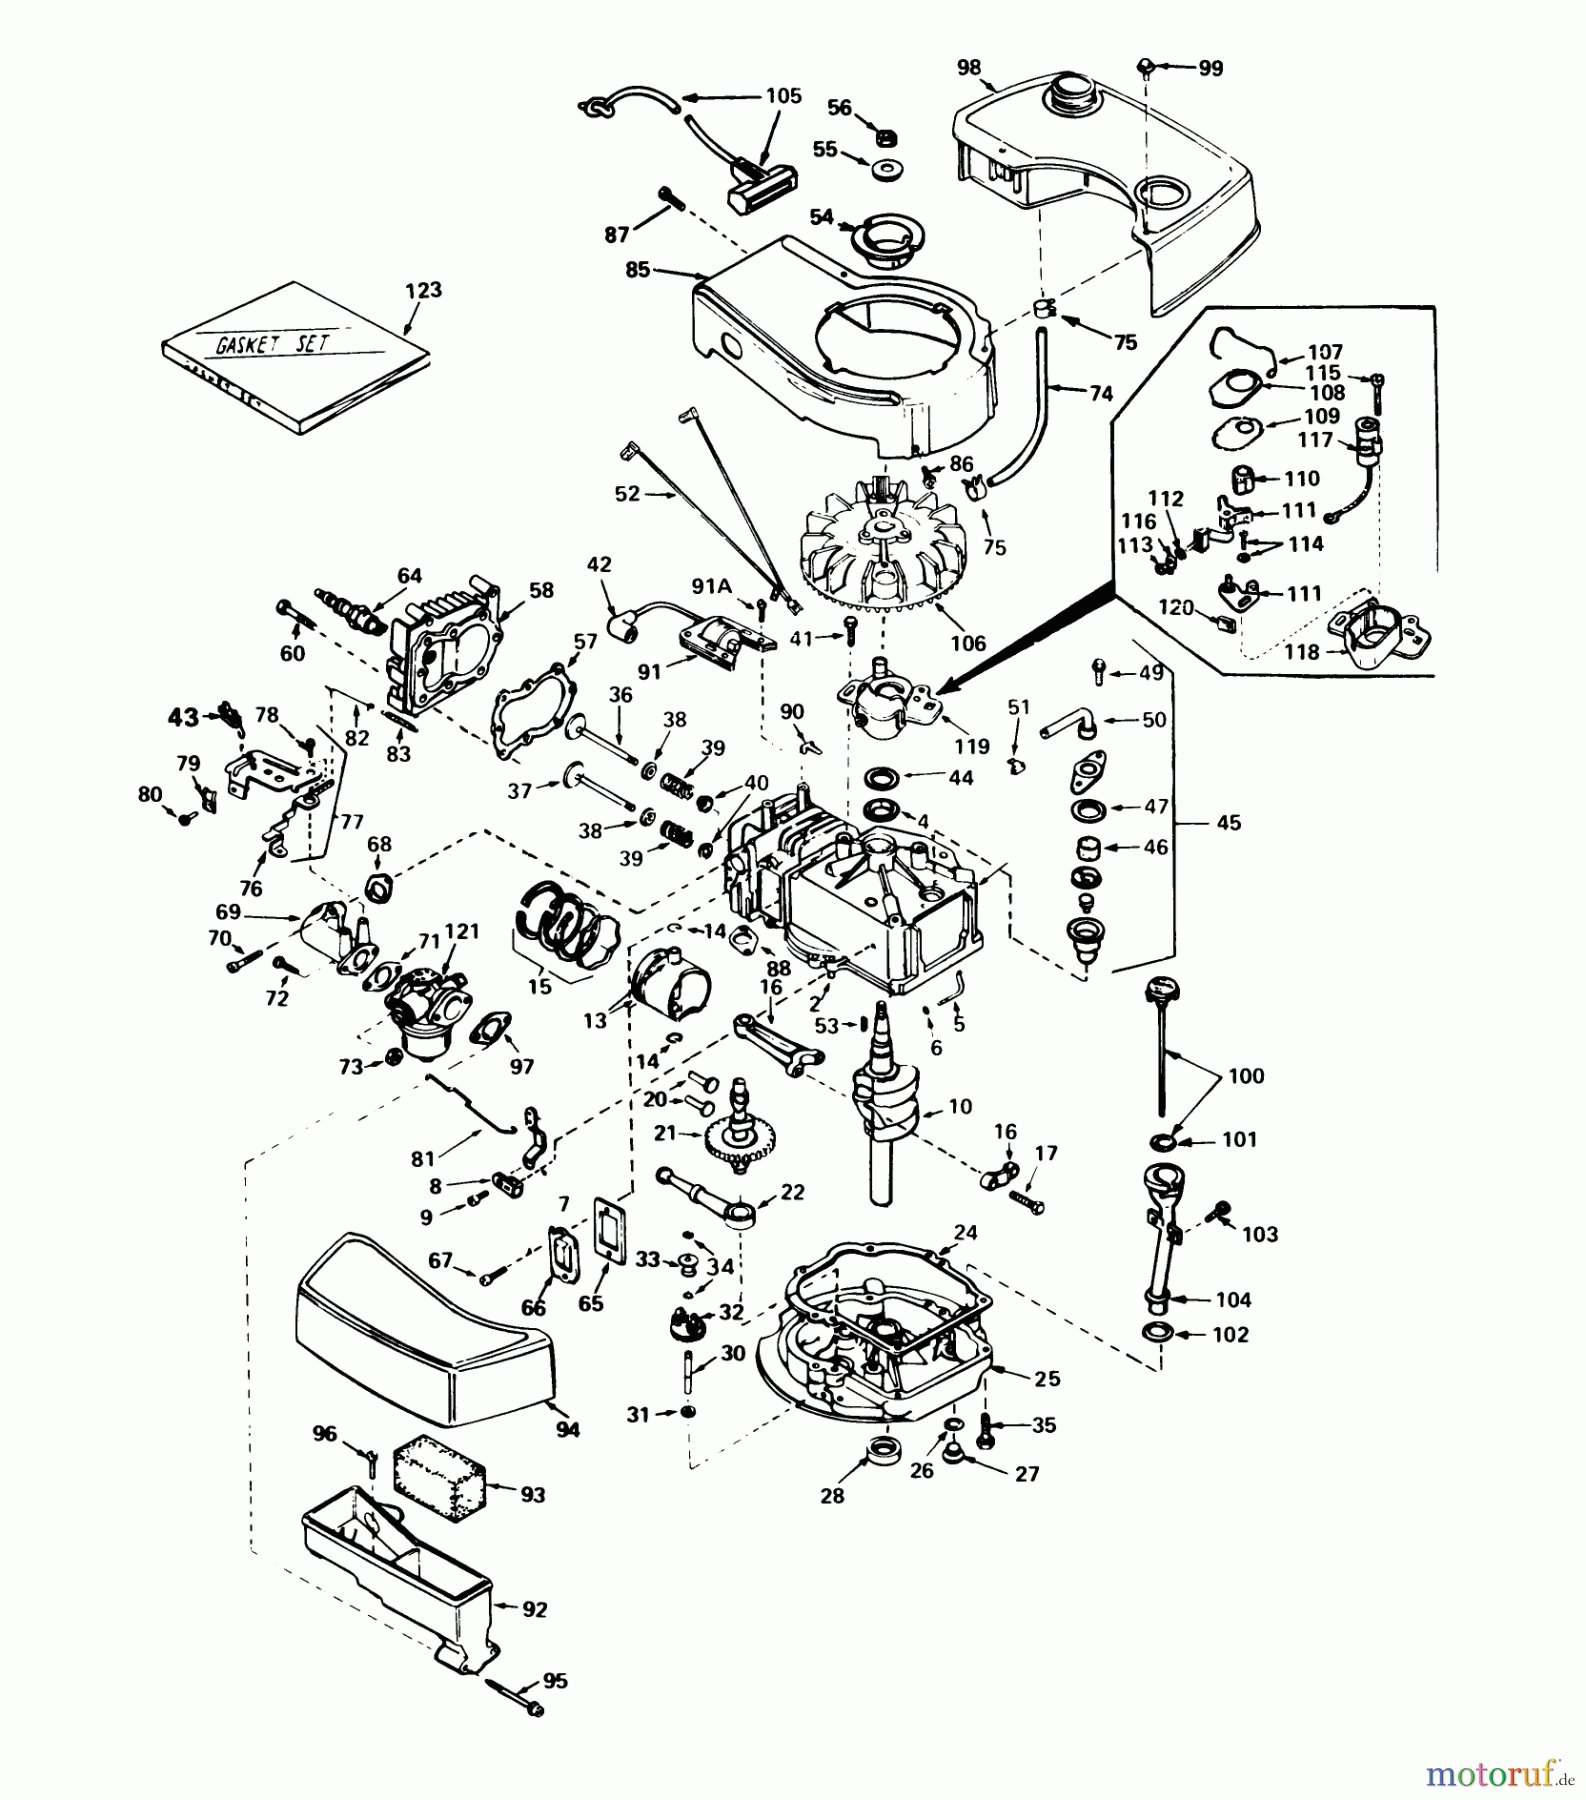  Toro Neu Mowers, Walk-Behind Seite 1 20790 - Toro Lawnmower, 1980 (0000001-0999999) ENGINE TECUMSEH MODEL NO. TNT 100-10065C